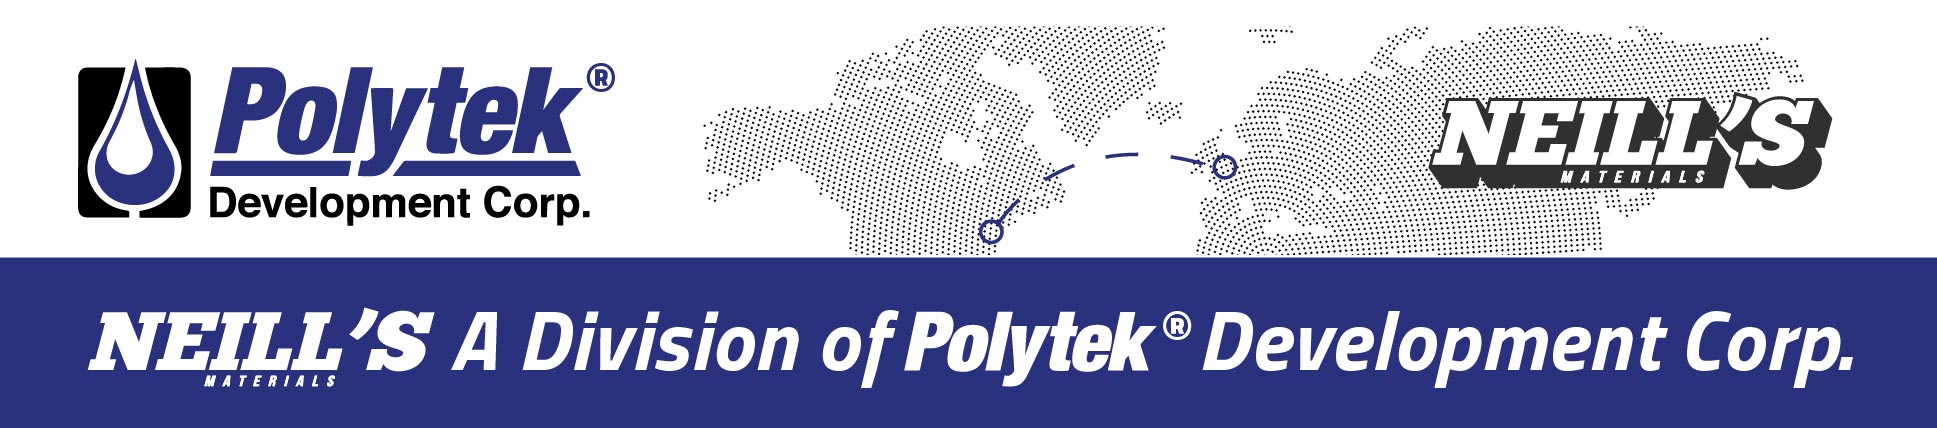 Neills Materials Polytek Acquisition